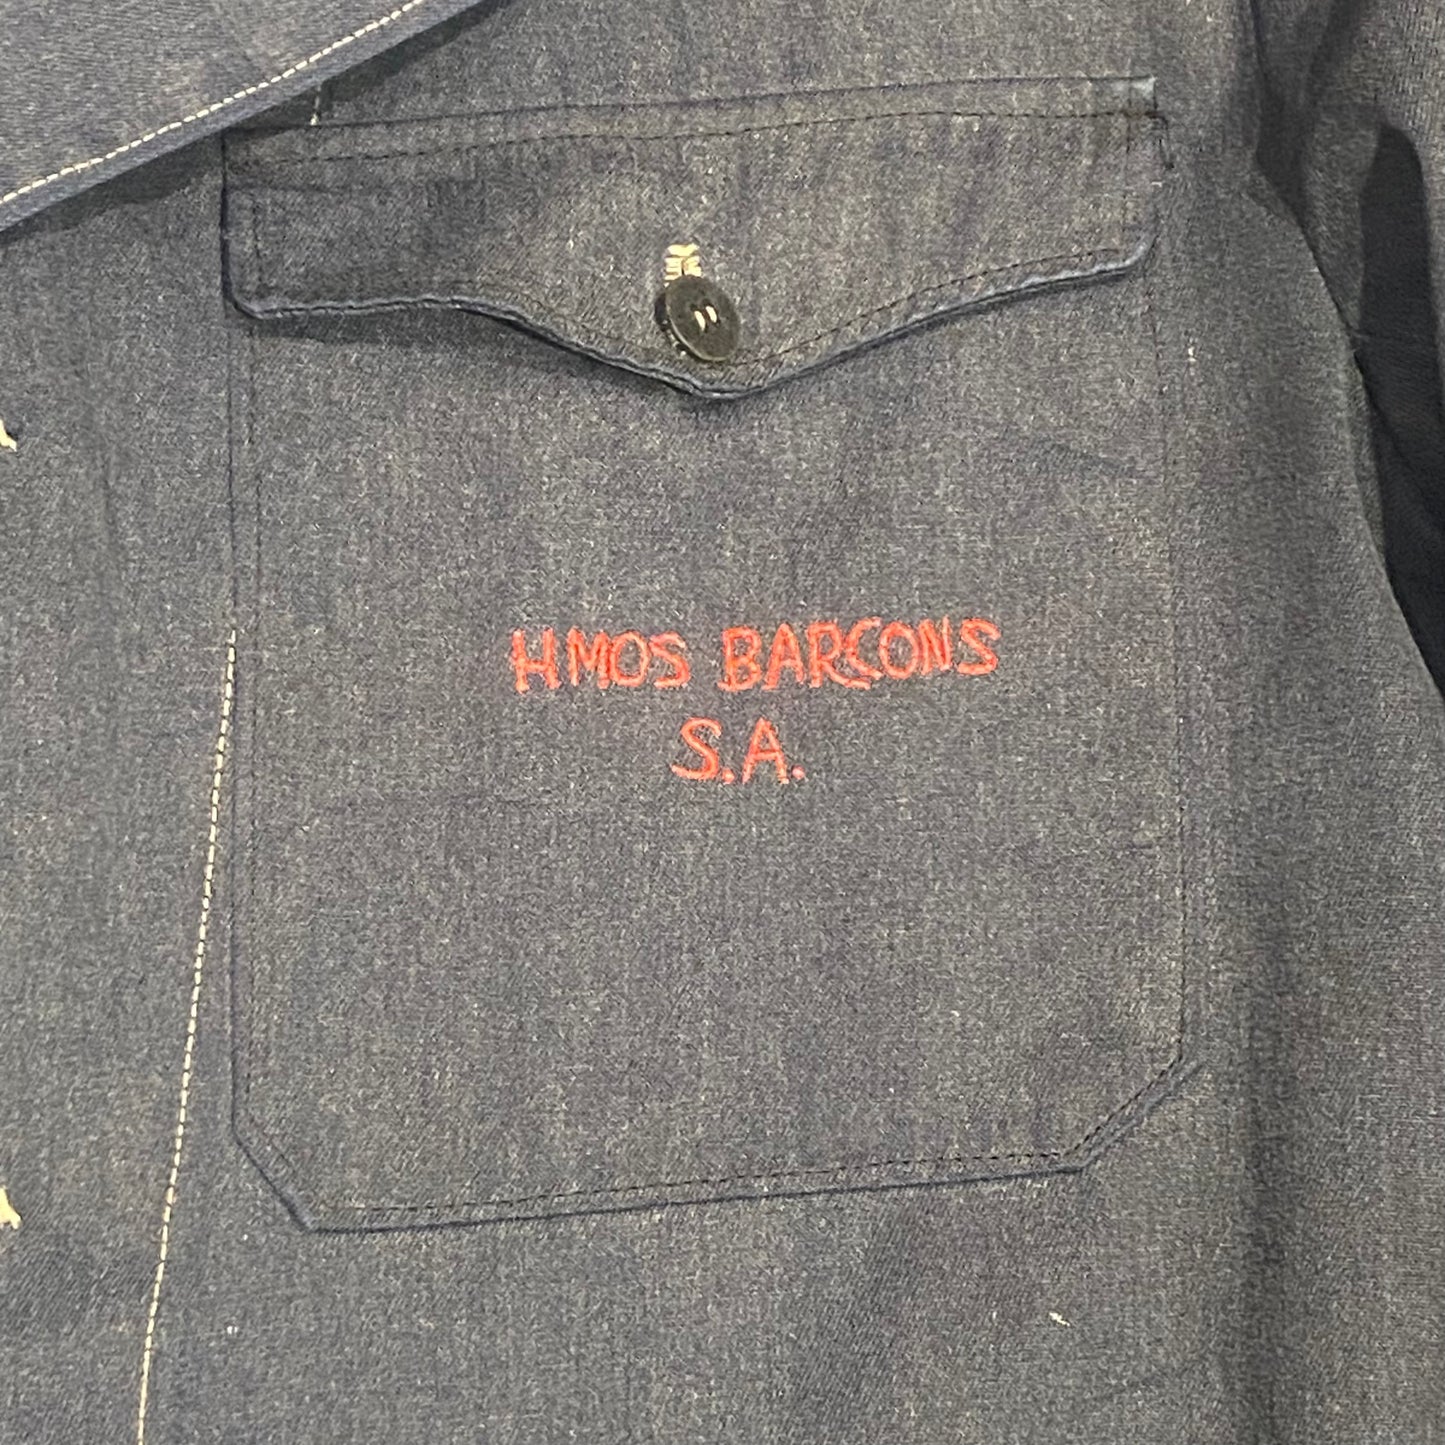 Circa 1950s Spanish workwear jacket, size large